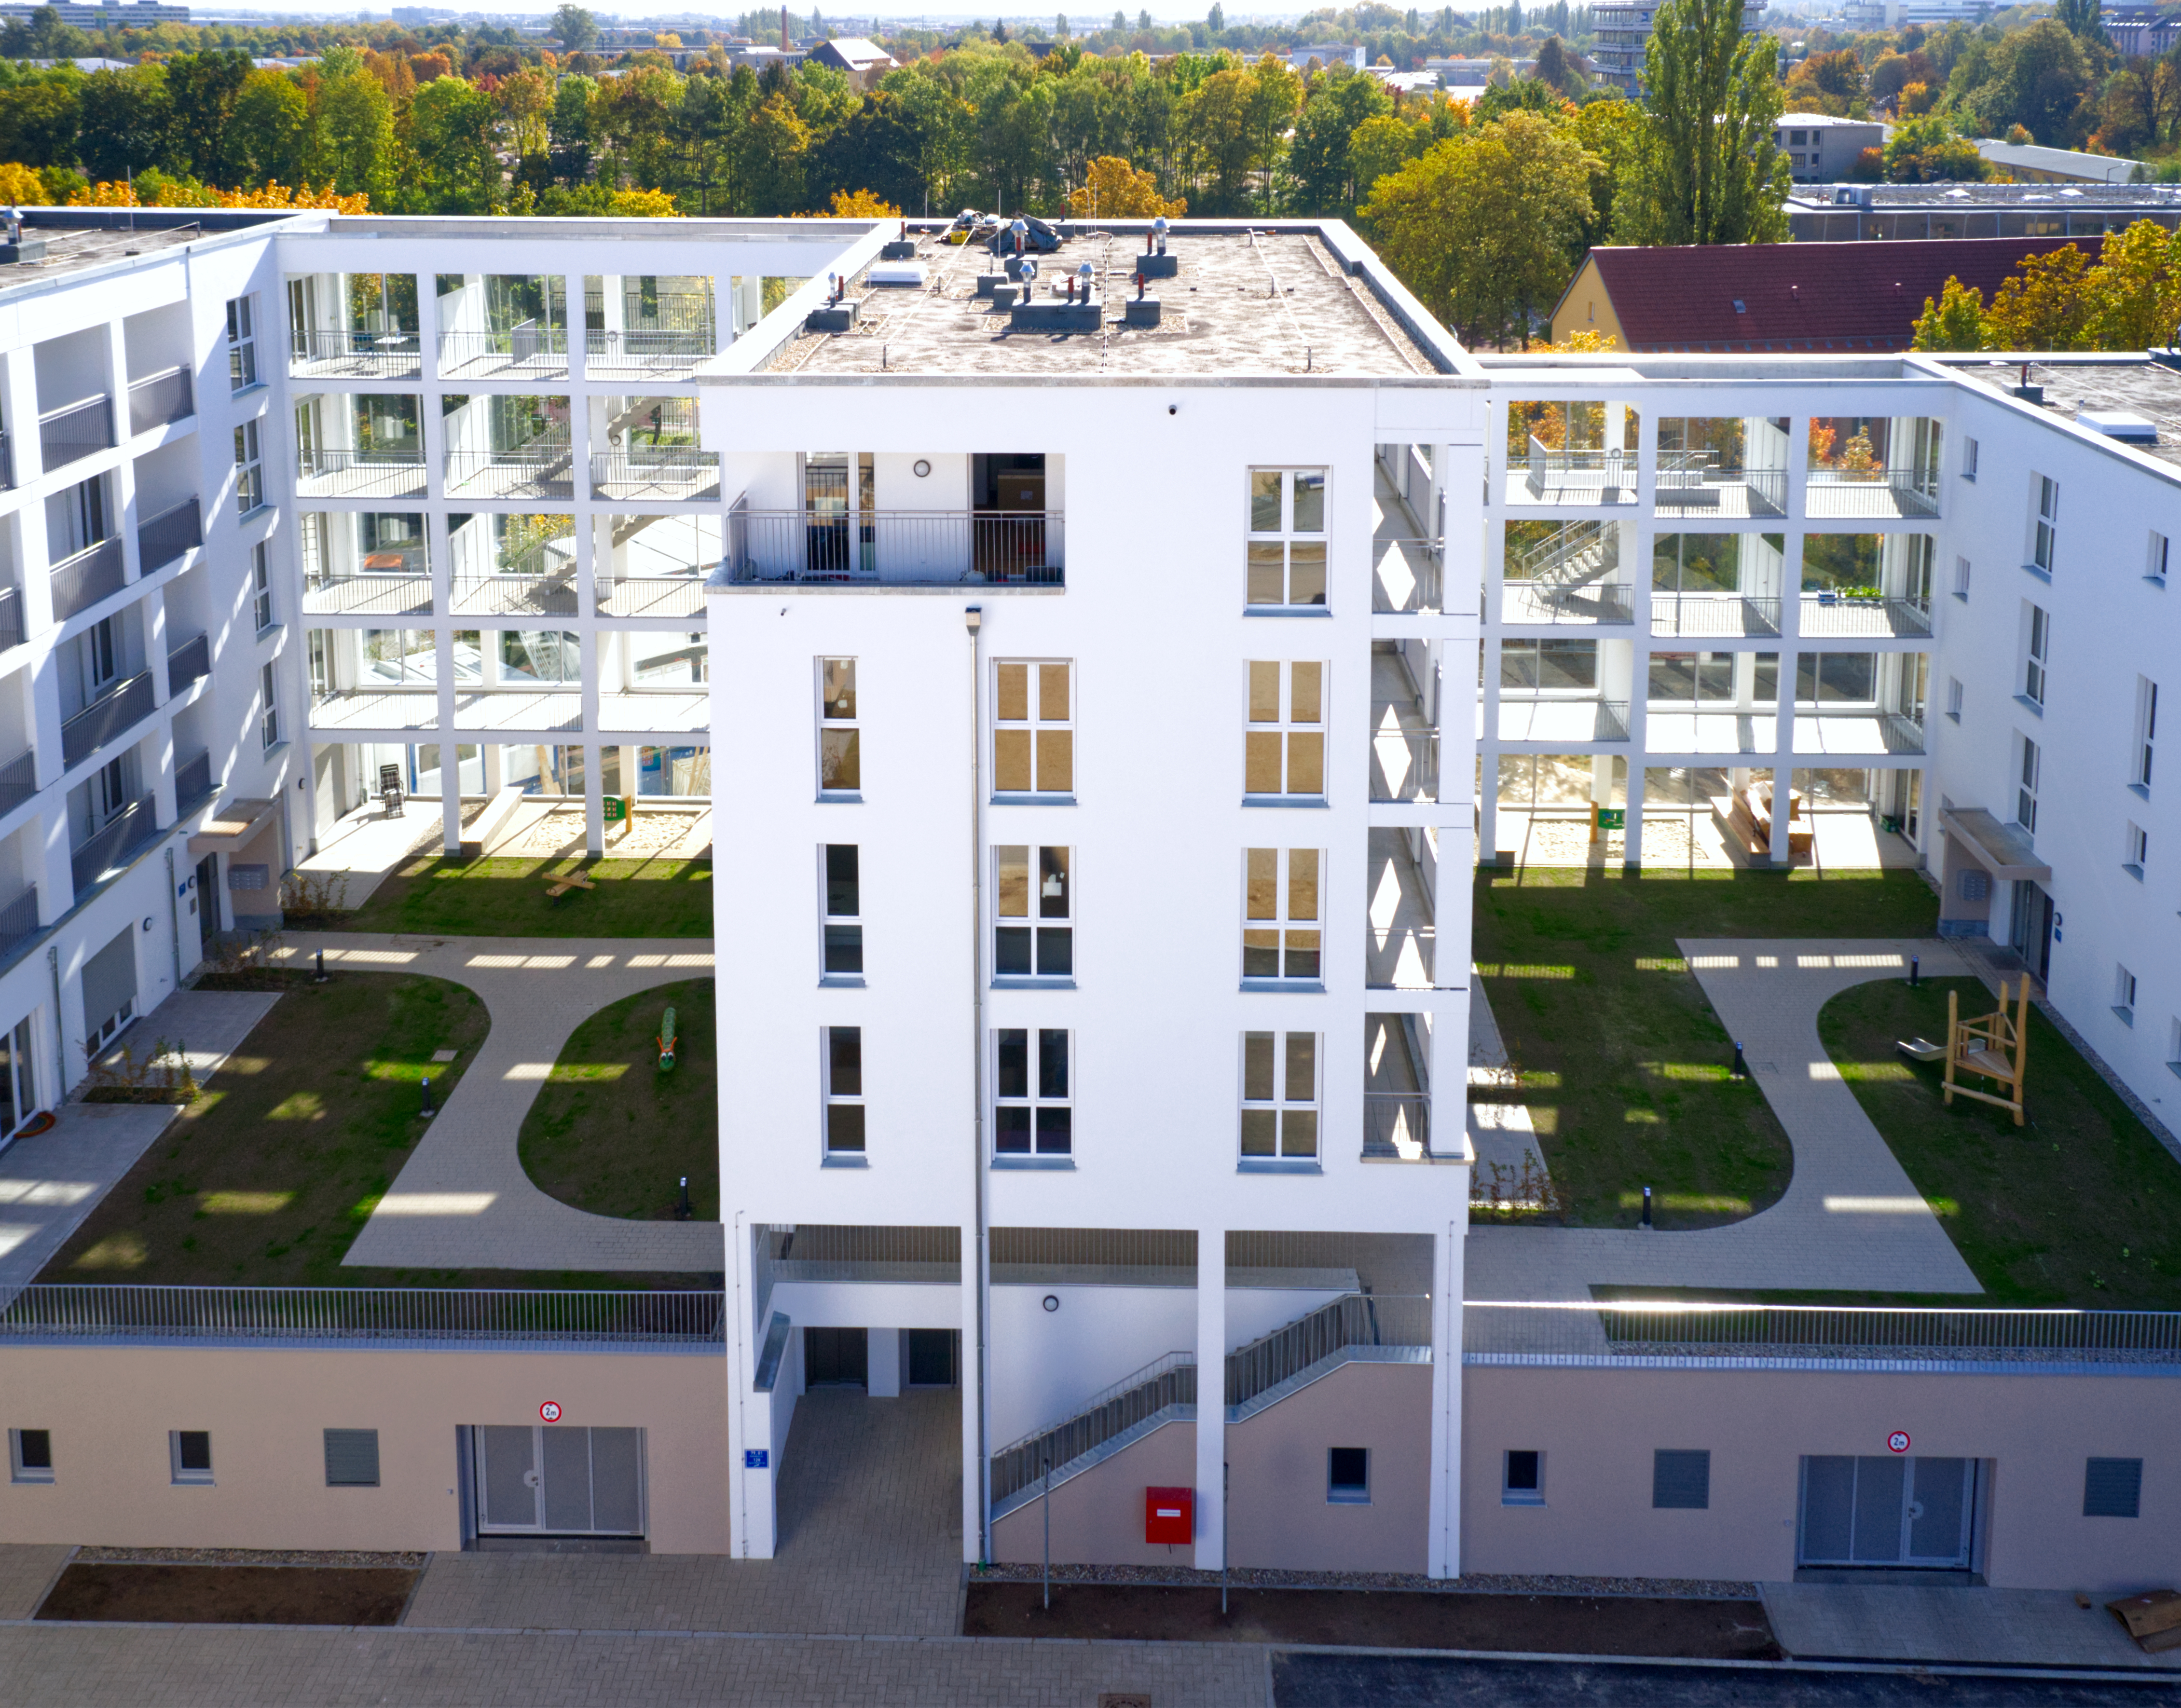 Wohnen am Kunstpark - hochwertige Eigentumswohnungen  - Building construction